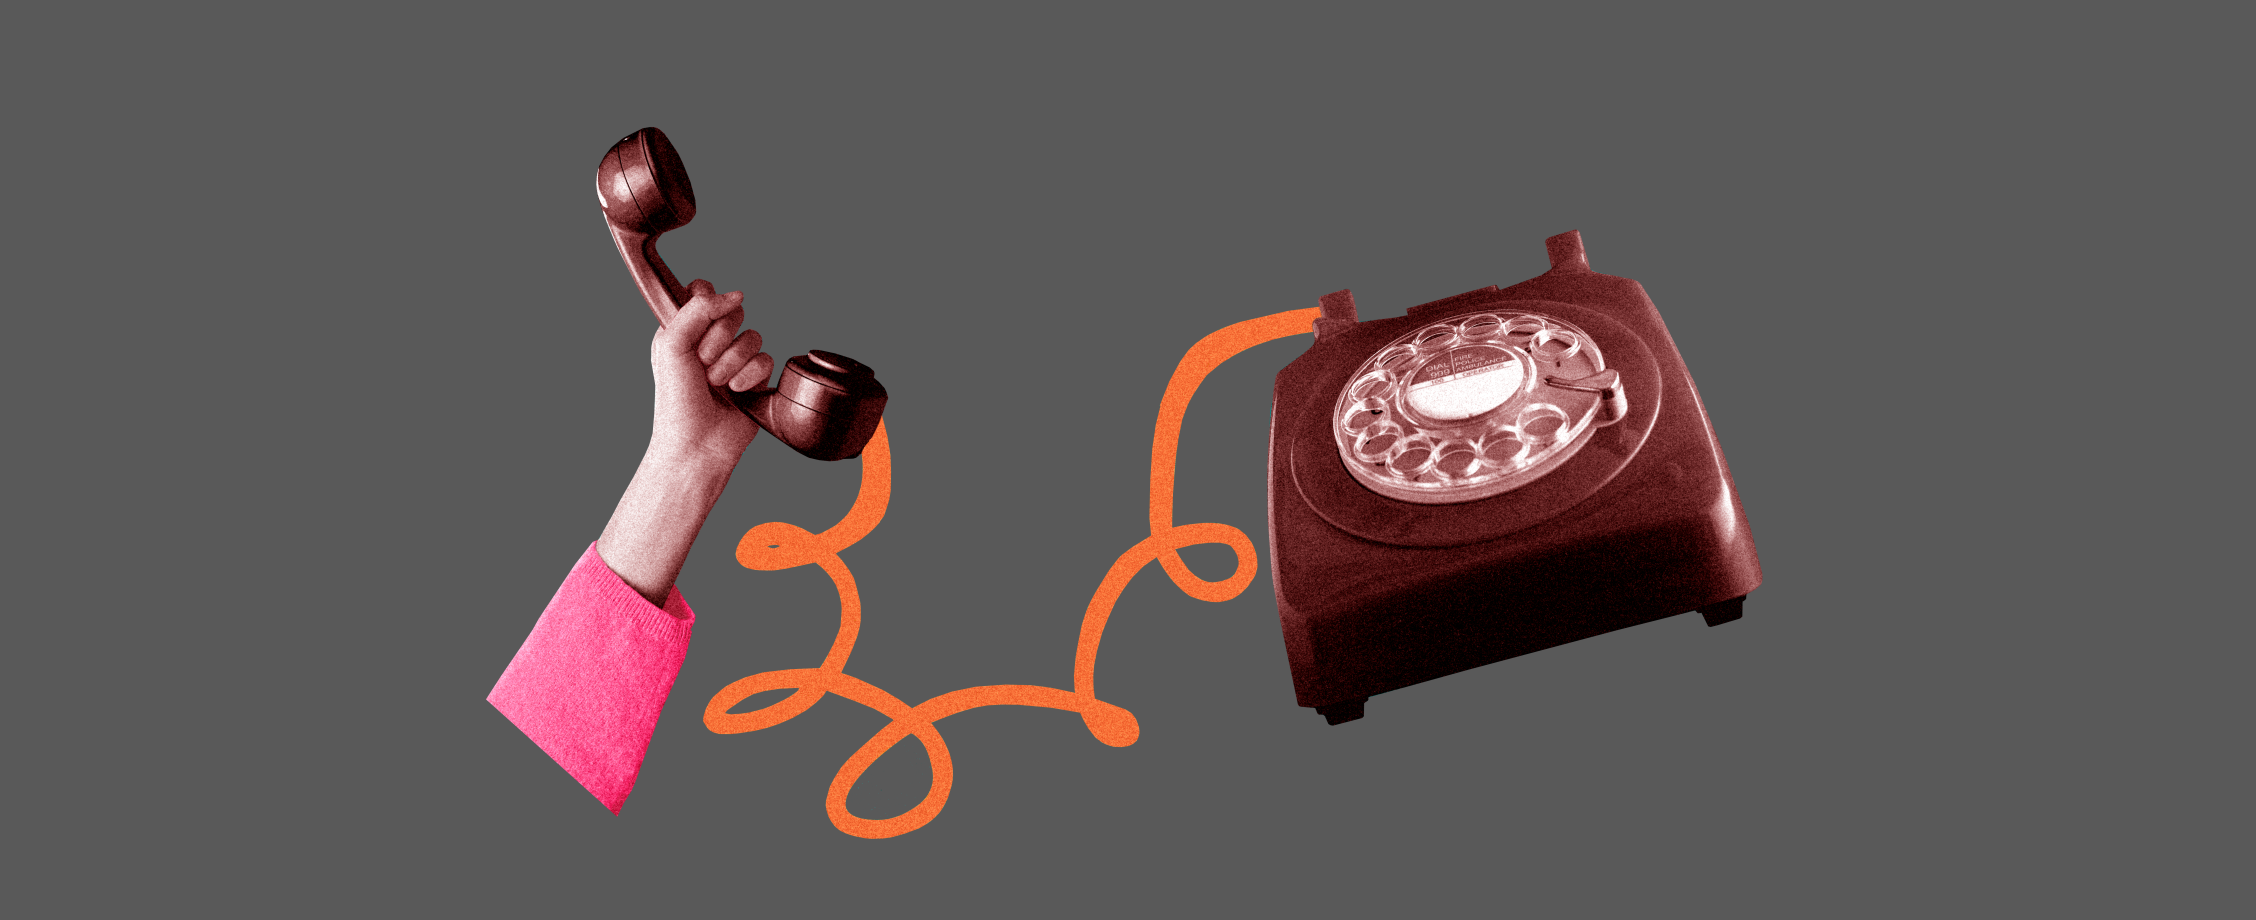 «Алло, с вами говорит мошенник»: топ-25 фраз мобильного развода